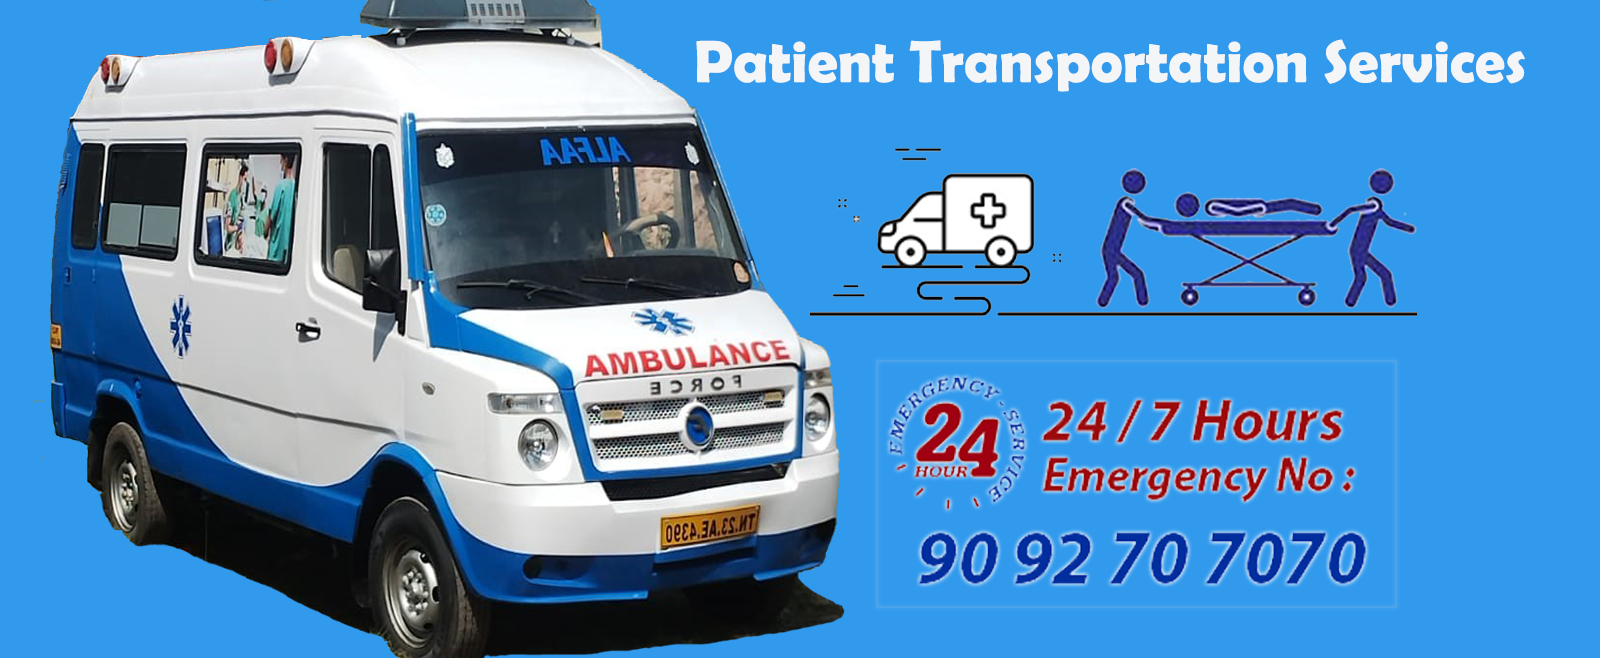 Patient Transportation Services Chennai